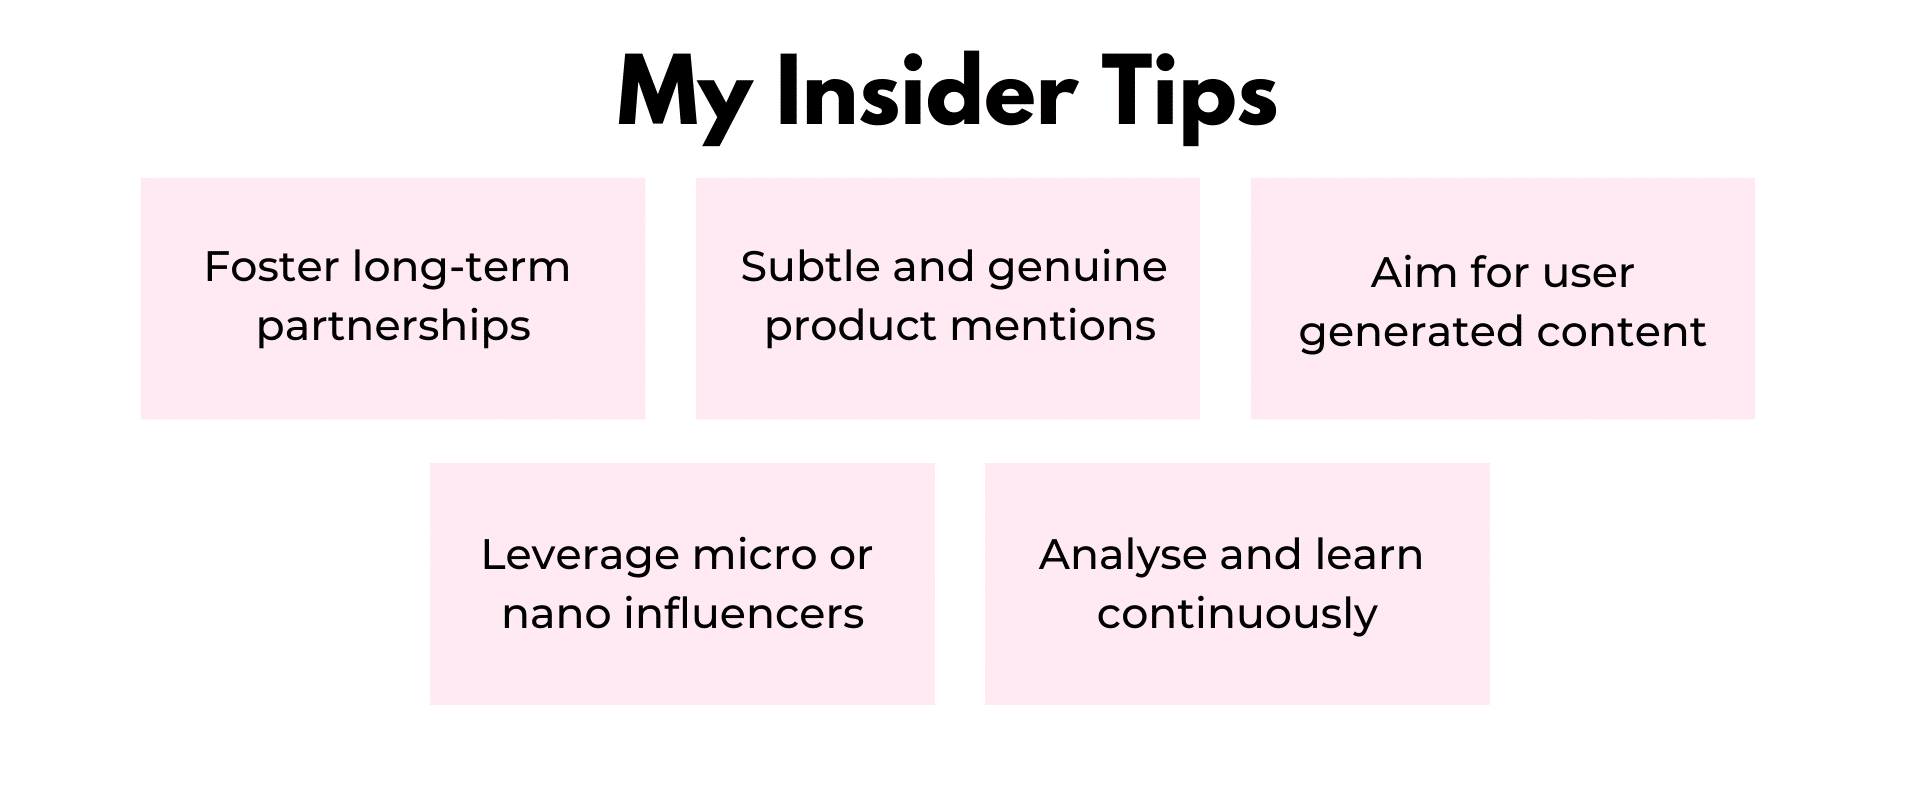 My insider tips my insider tips my insider tips my insider tips my insider tips my insider tips my insider tips my inside.